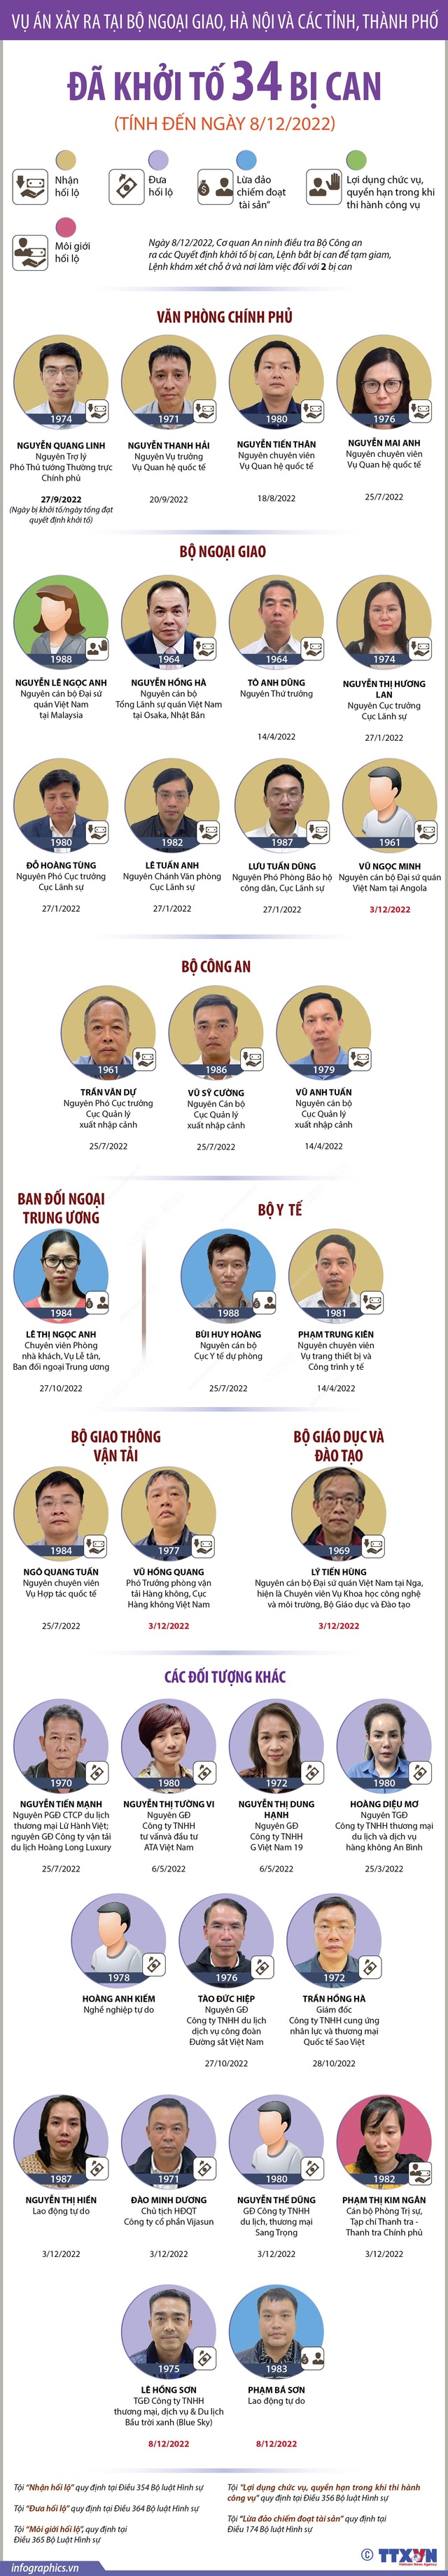 Vụ án xảy ra tại Bộ Ngoại giao, Hà Nội và các tỉnh, thành phố: Đã khởi tố 34 bị can - Ảnh 1.